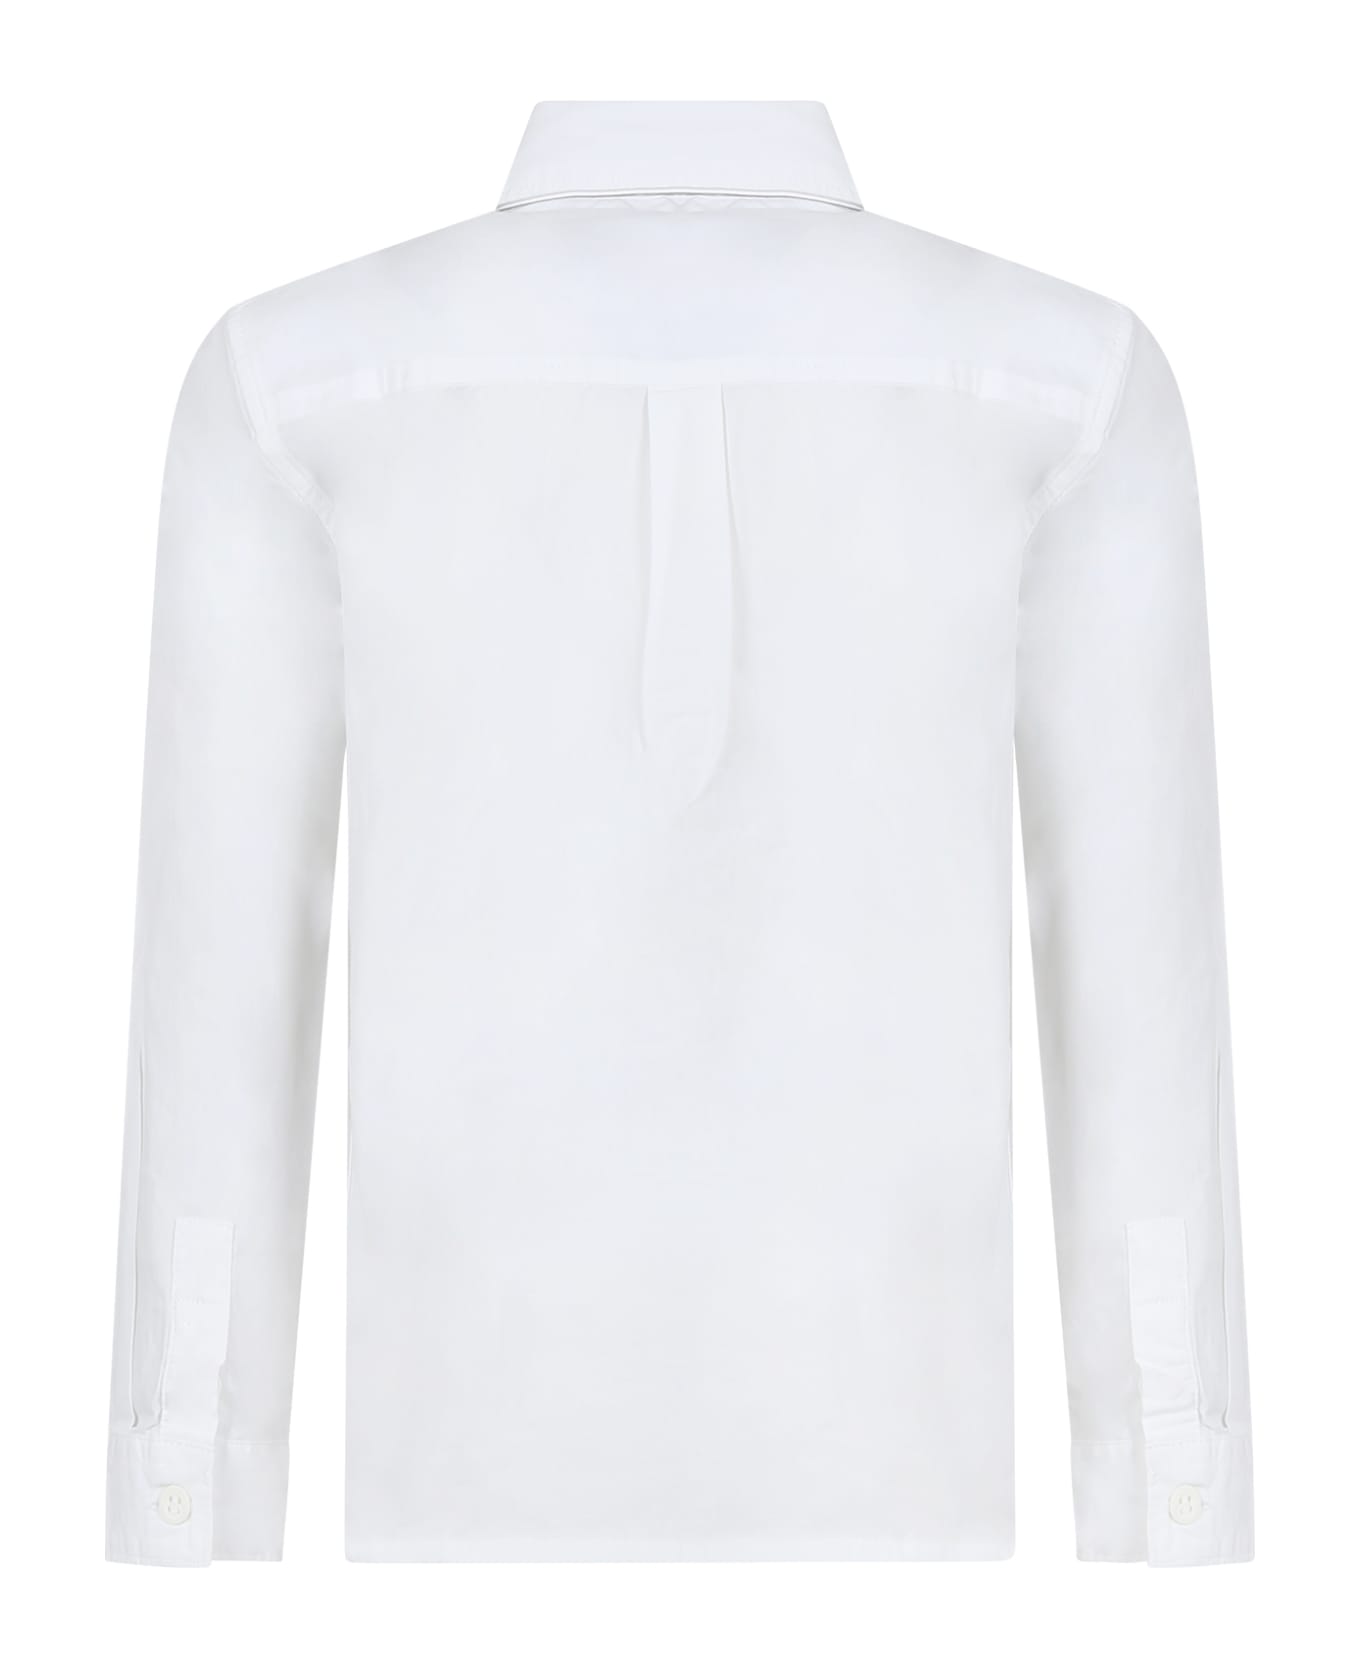 Calvin Klein White Shirt For Boy With Logo - White